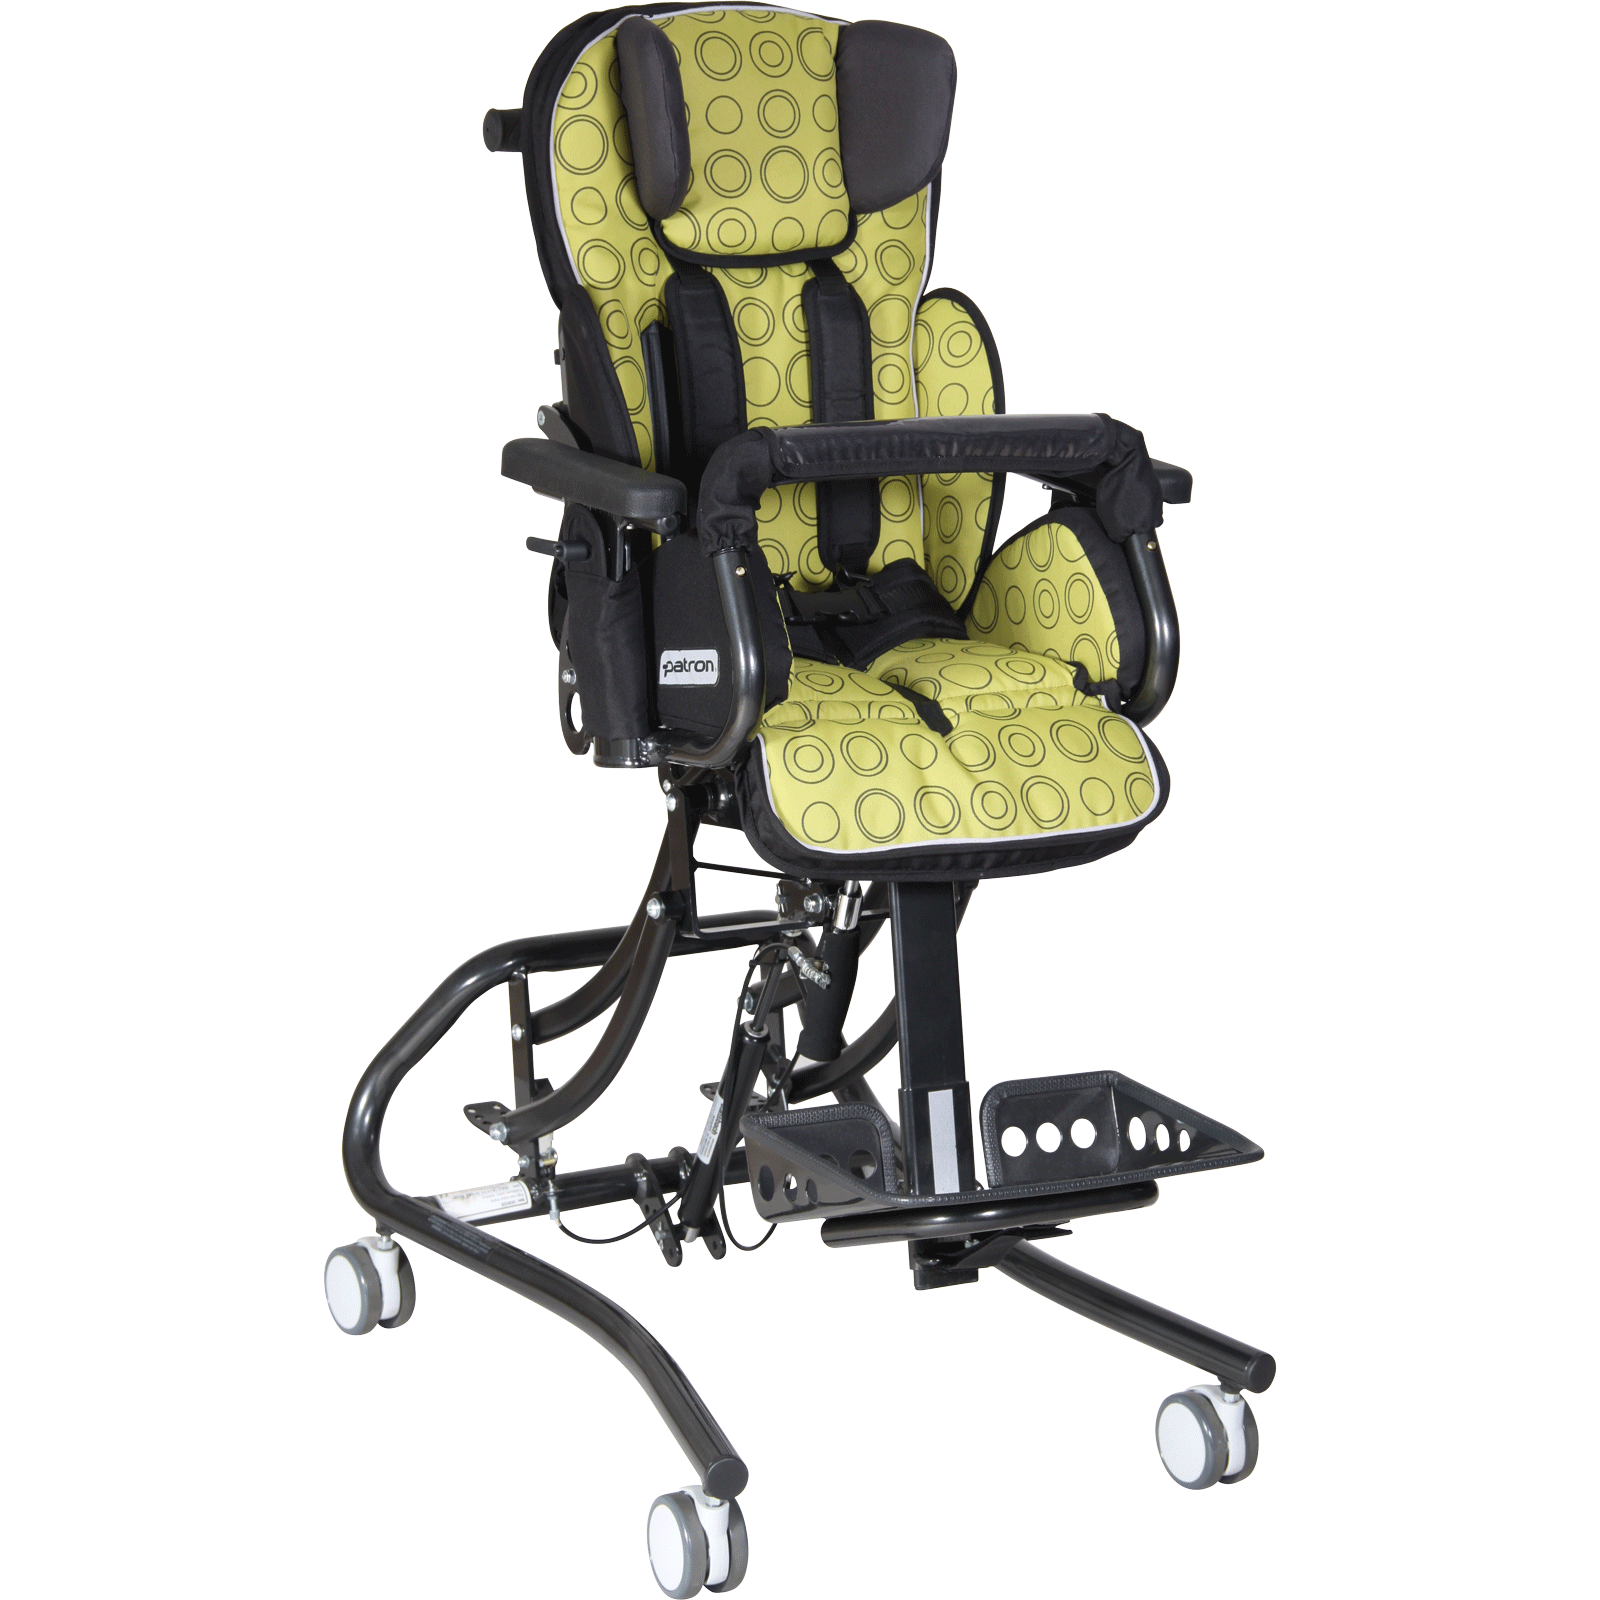 Сиденье для детей дцп. Кресло patron Froggo реабилитационное. Кресло коляска патрон Фрогго. Комнатная кресло коляска для детей с ДЦП. Кресло-коляска Froggo ly-170-FRG для детей с ДЦП.